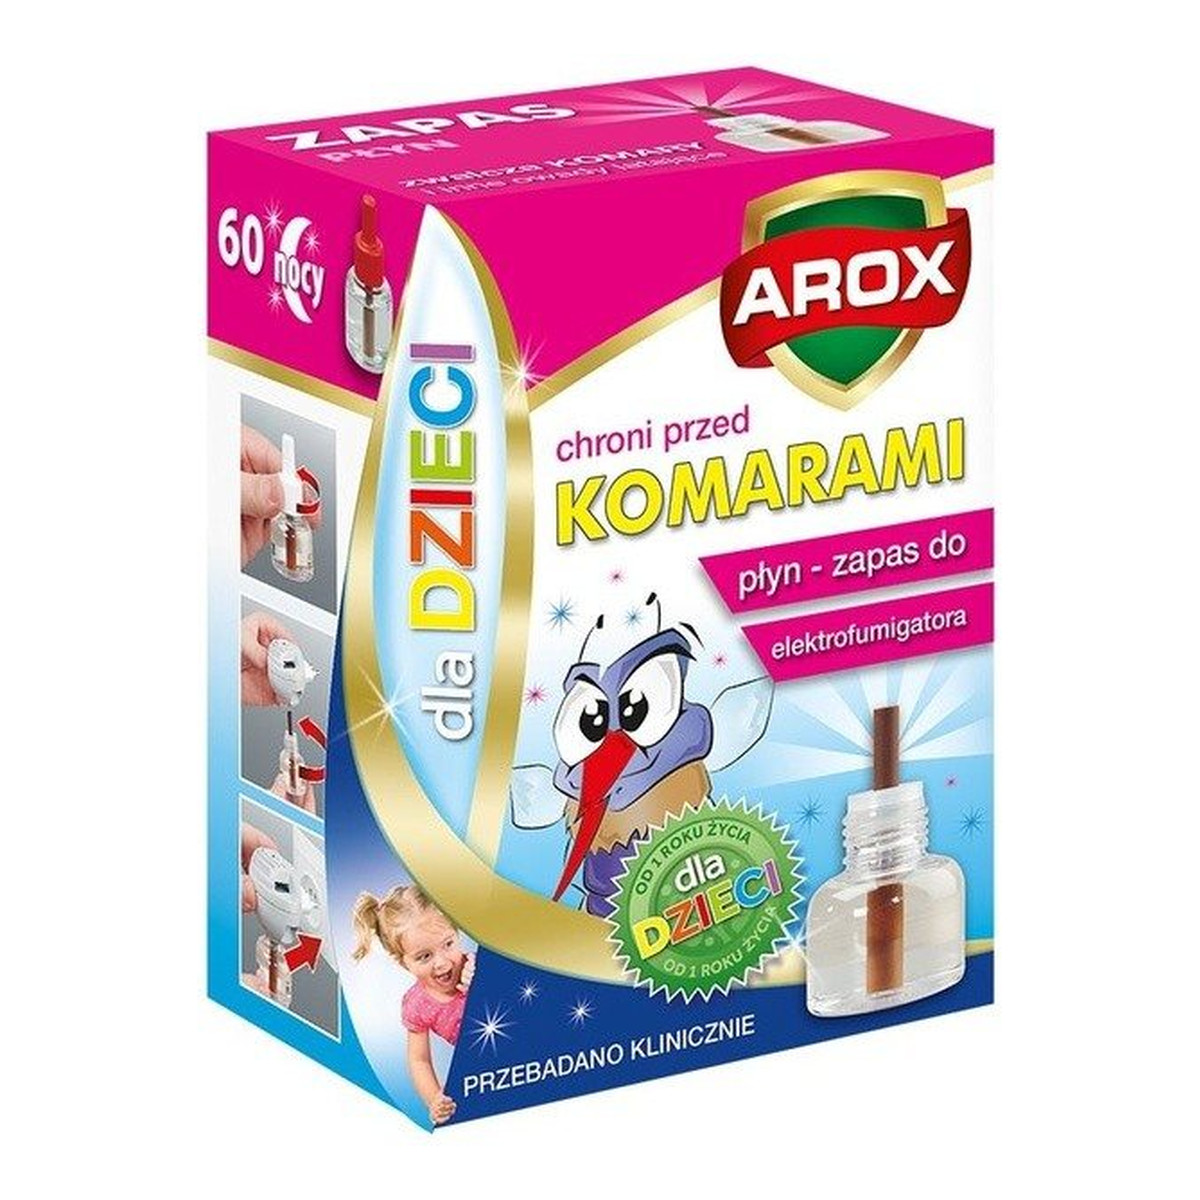 Arox Płyn Zapasowy do elektrofumigatora dla dzieci 60 nocy